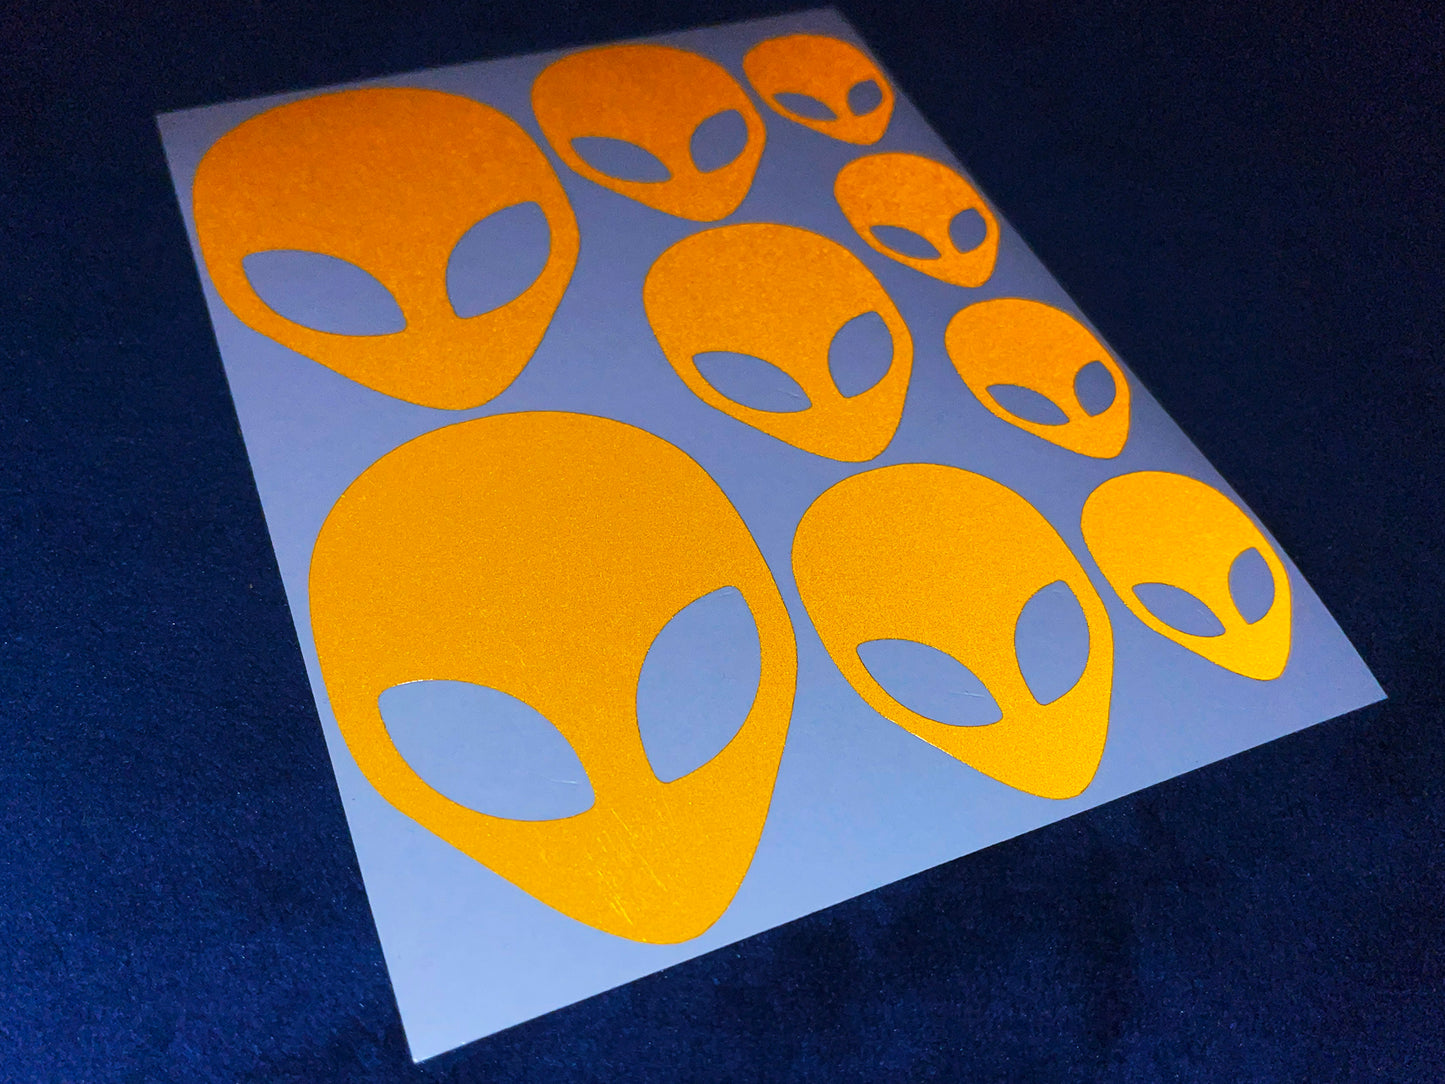 Valueviz Reflective Alien Head (Assorted) Stickers